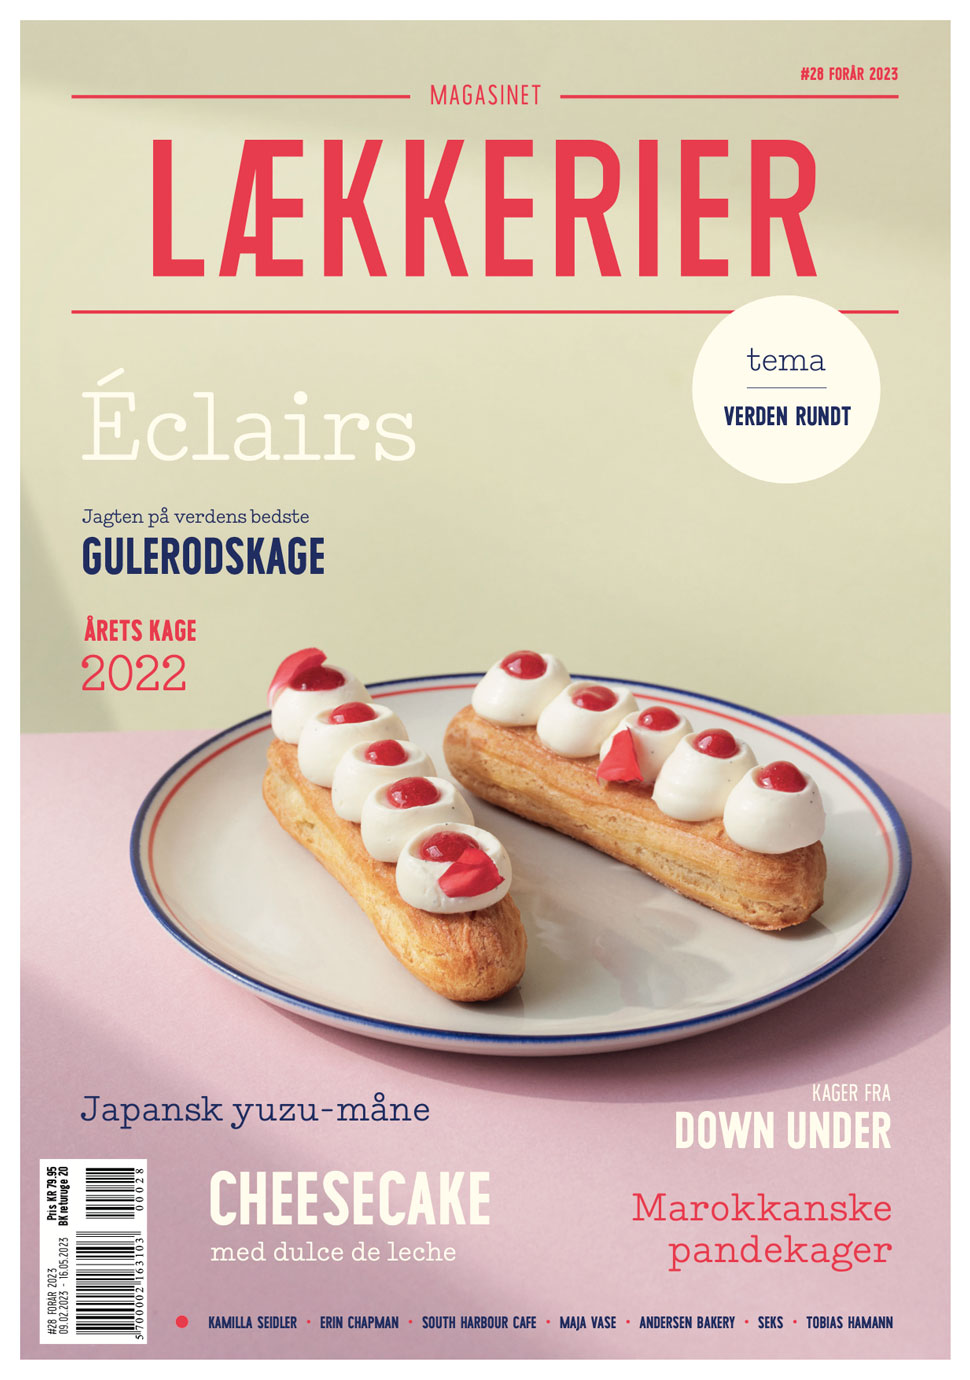 lækkerier-magasin-forside-28-hvid-kant